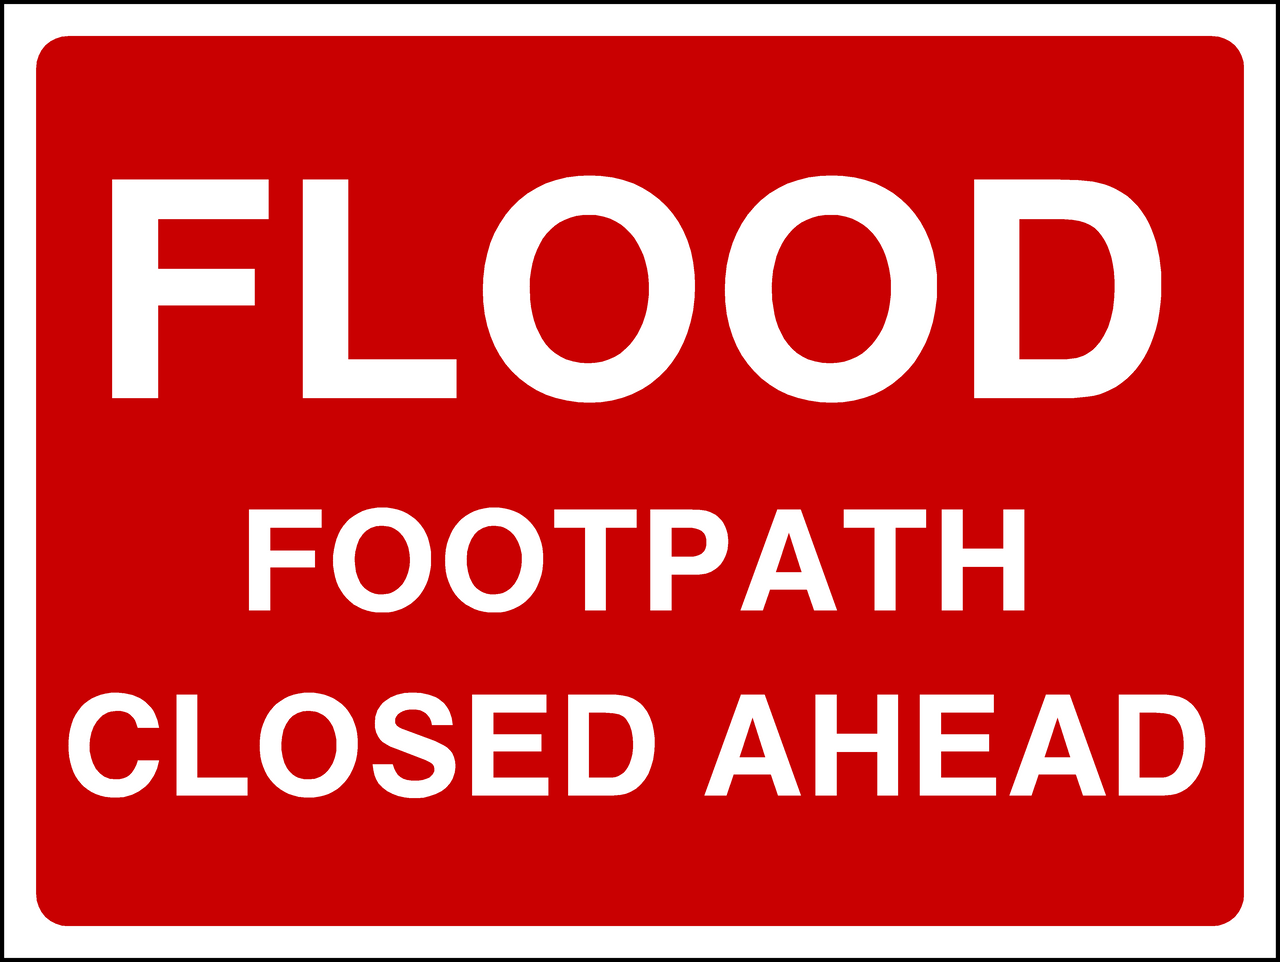 FLOOD Footpath closed ahead